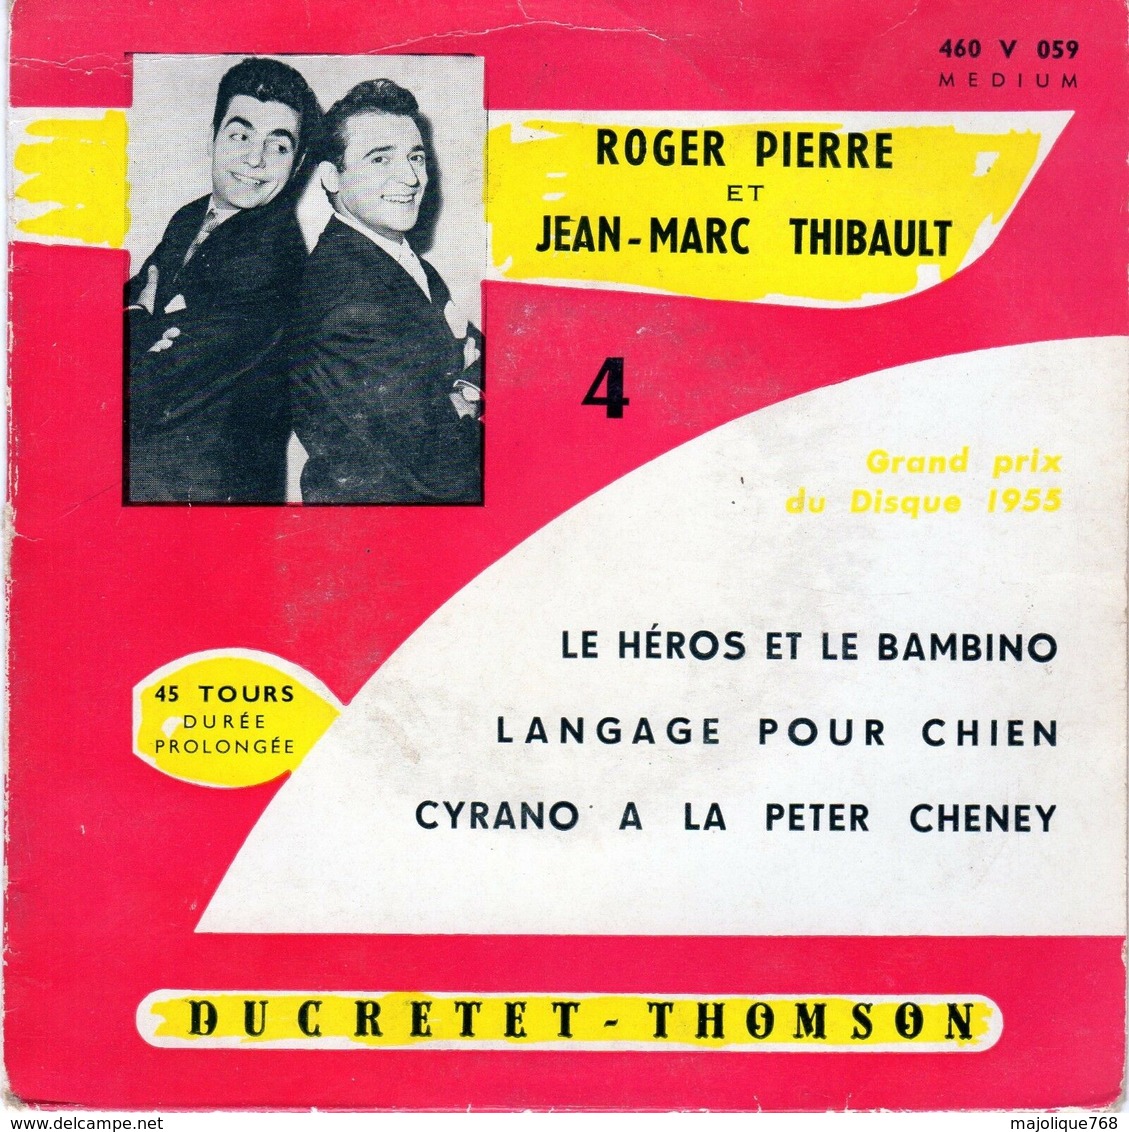 Disque De Roger Pierre Et Jean-marc Thibault - Ducretet-thomson 460 V 059 - Humour, Cabaret